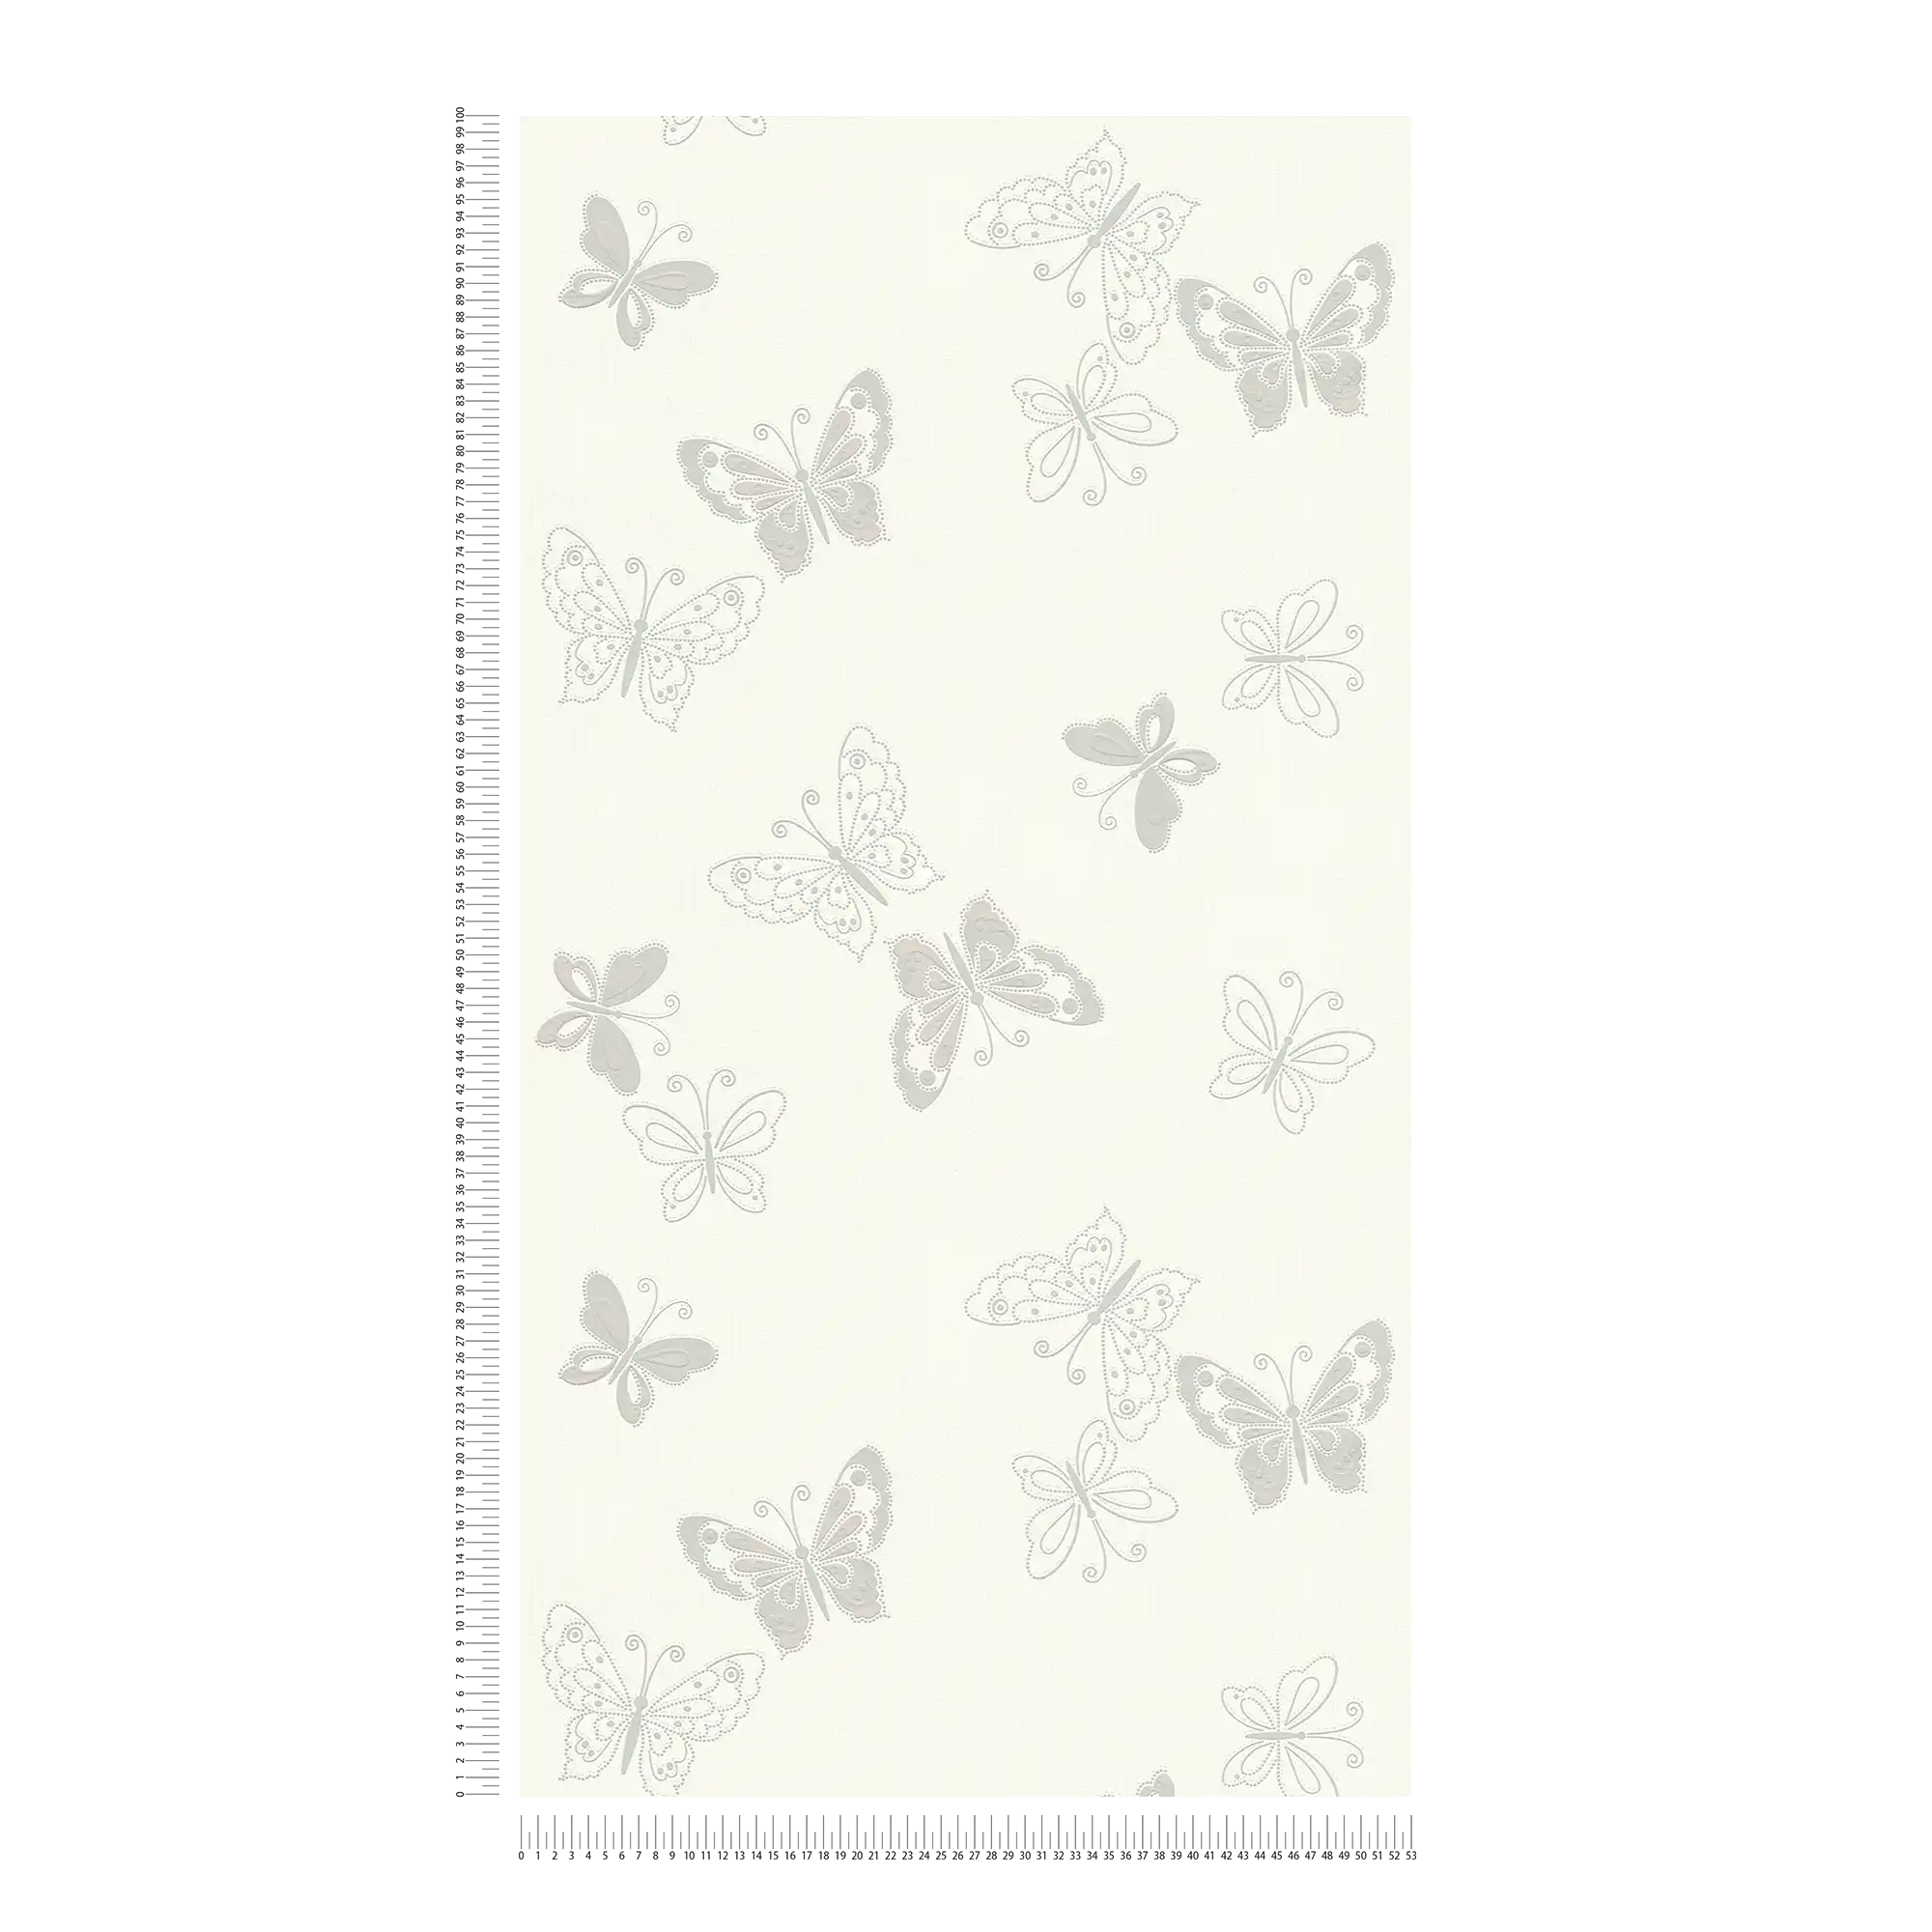             Butterfly wallpaper with metallic effect - beige, silver
        